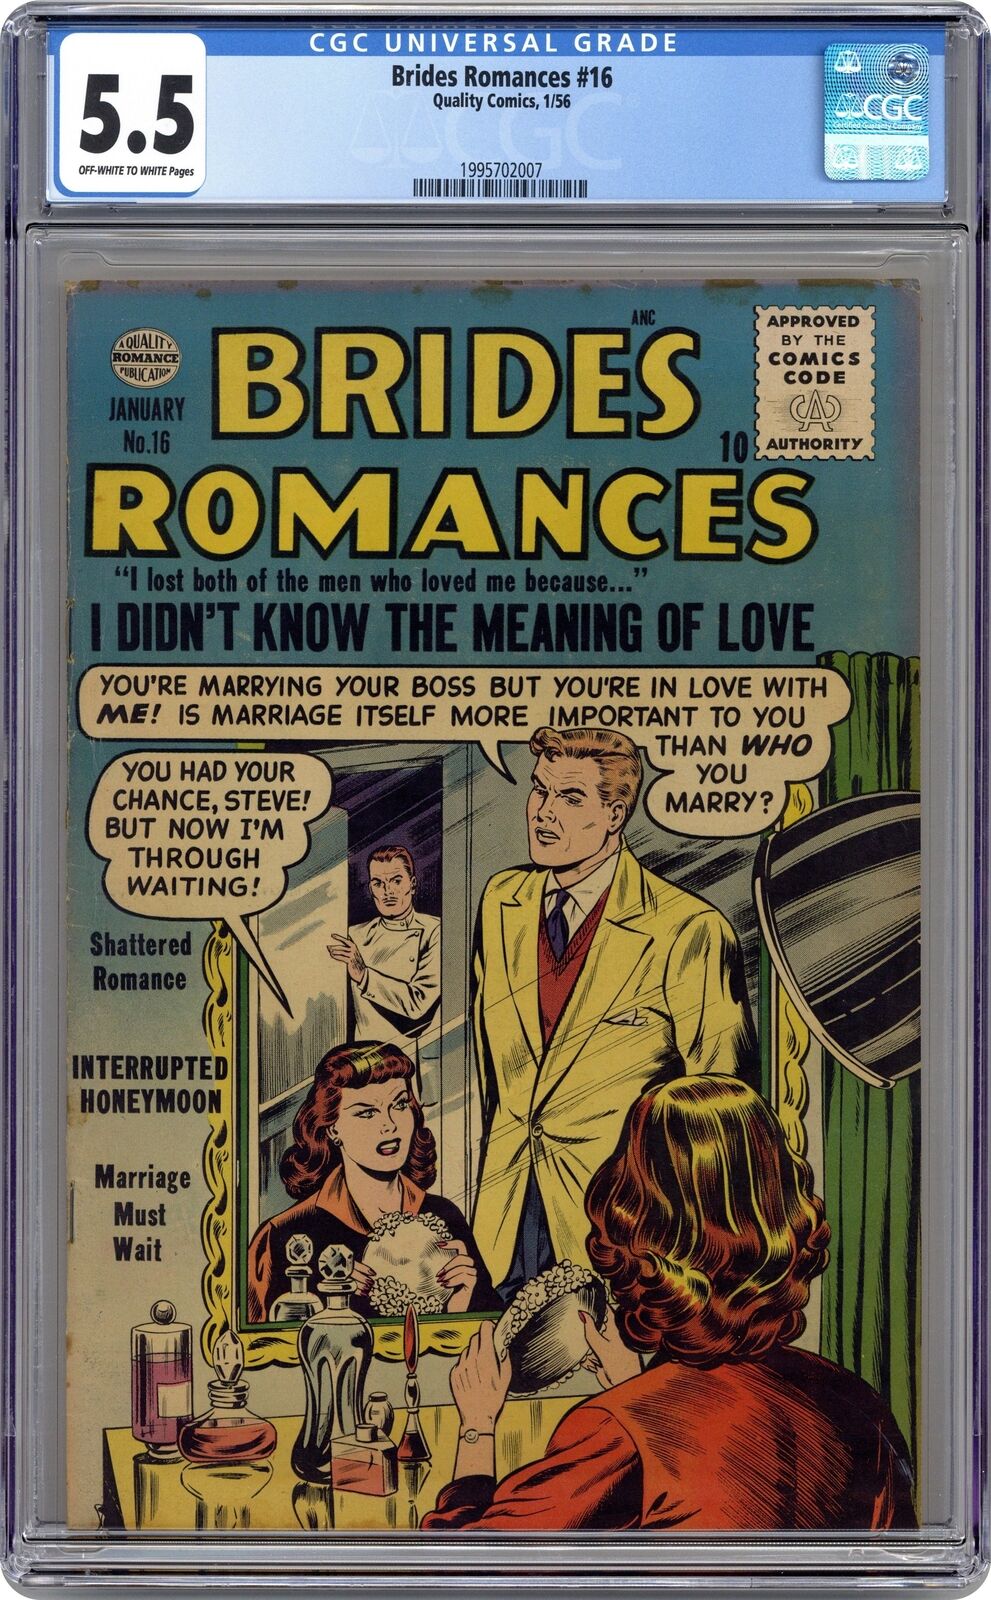 Brides Romances #16 CGC 5.5 1956 1995702007